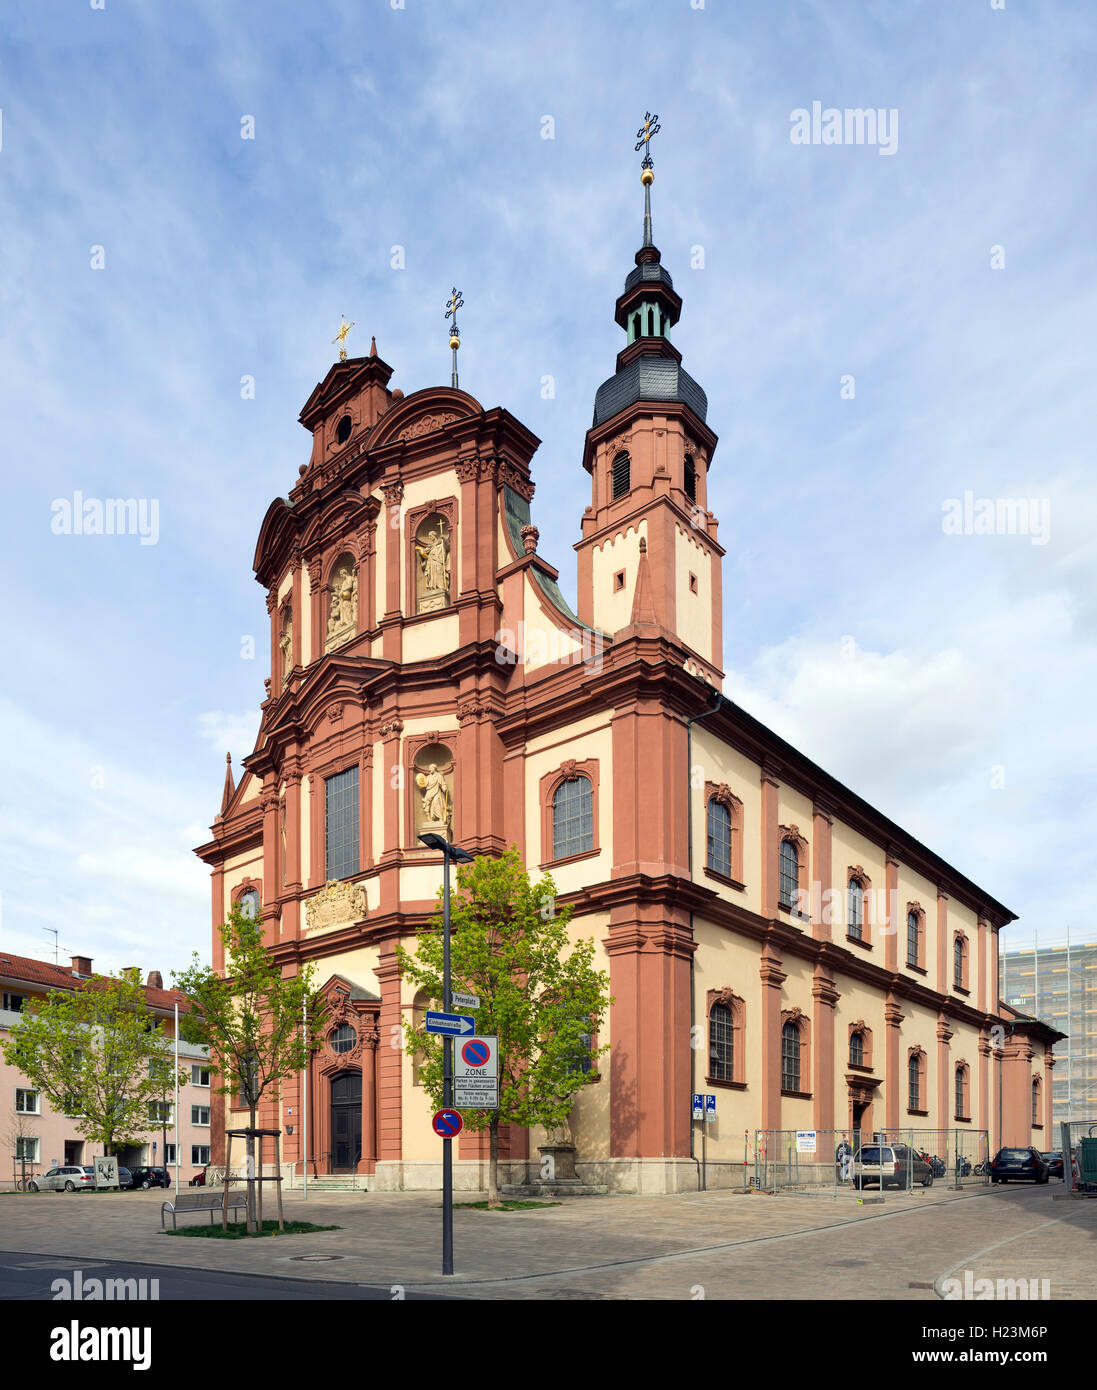 Katholische Pfarrkirche St. Peter und Paul in Würzburg. Die Kirche geht auf einen romanischen Bau aus dem 12. Jahrhundert zurück Stock Photo